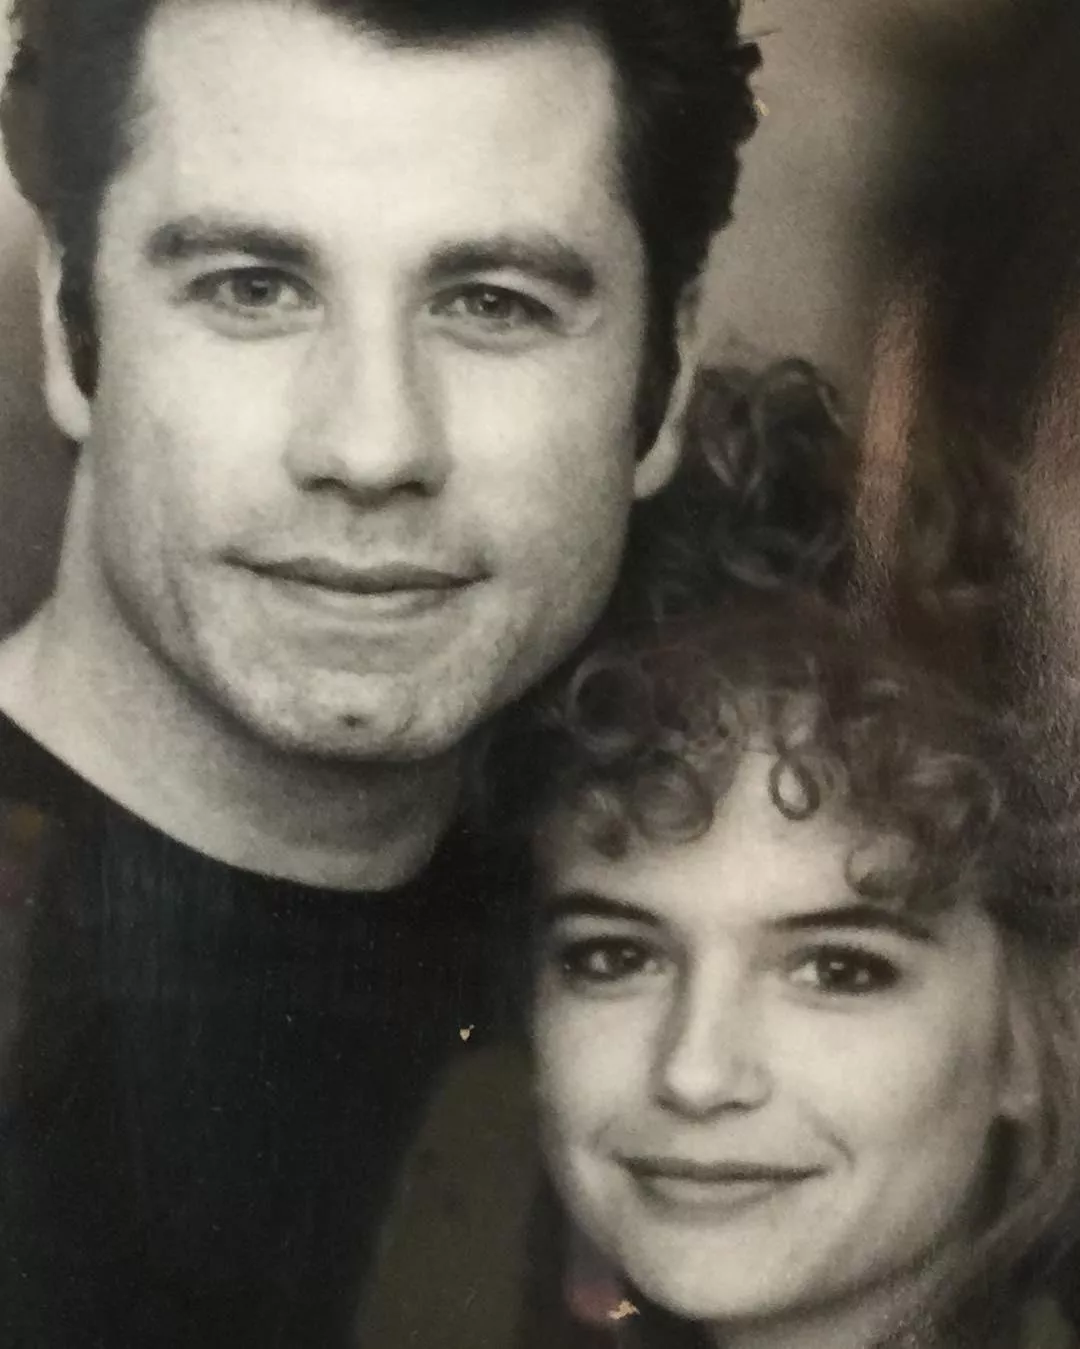 وفاة الممثلة Kelly Preston، زوجة John Travolta بعد صراع مع السرطان